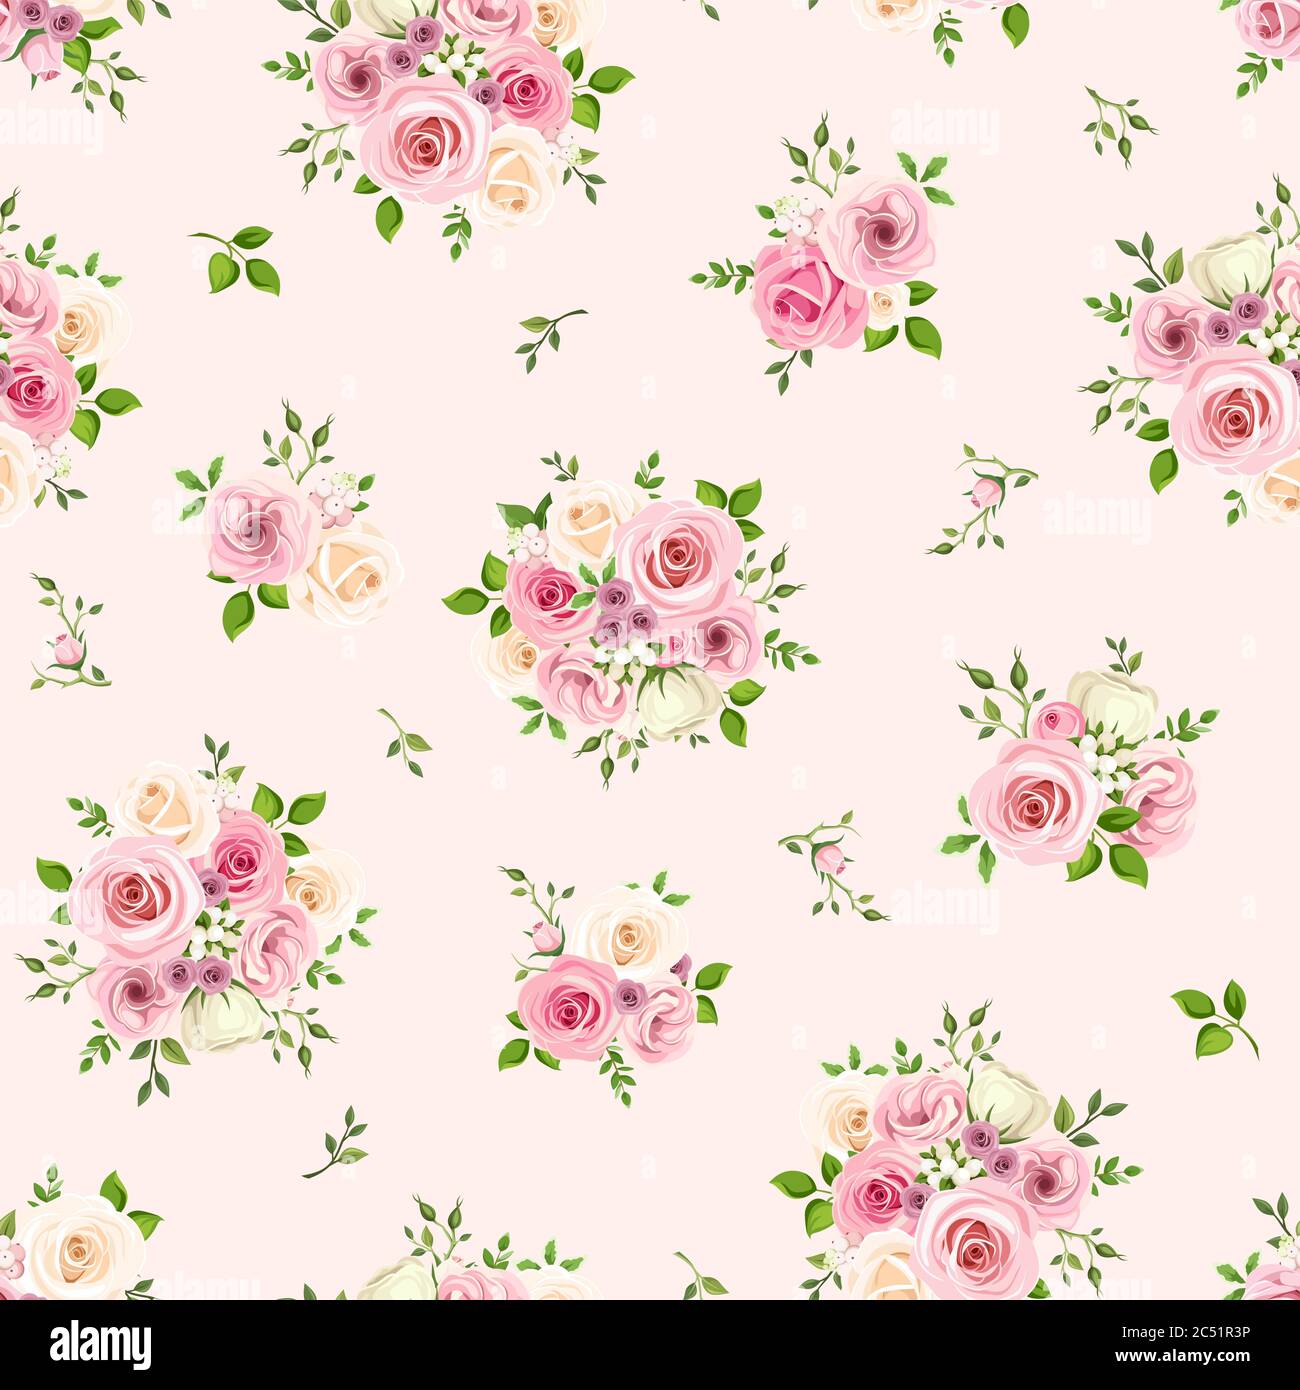 Vektor nahtlose Muster mit rosa und weißen Rosen auf einem rosa Hintergrund. Stock Vektor